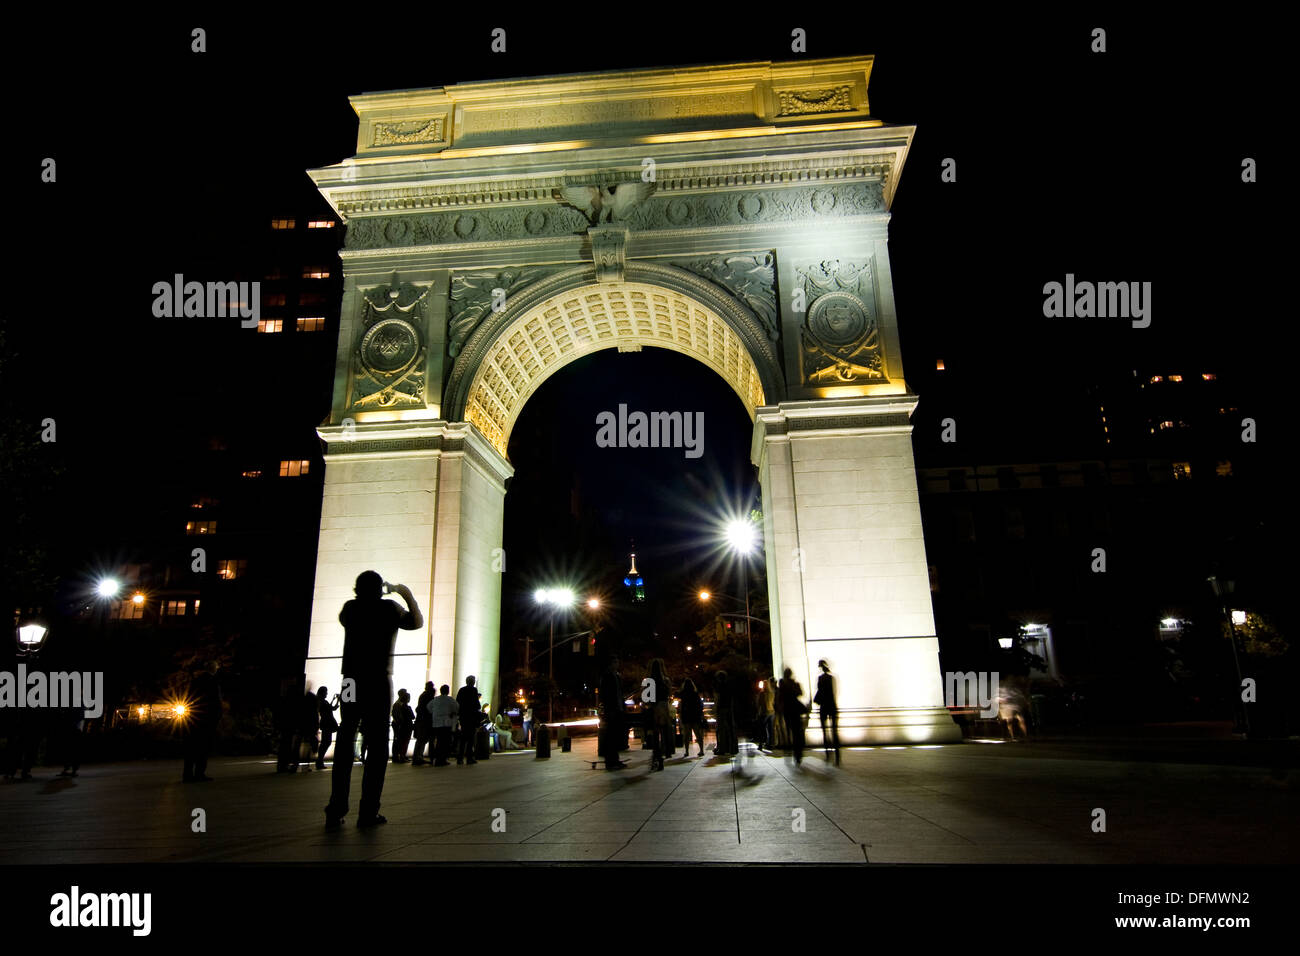 L'homme de prendre une photo de la ville de New York Washington Square Arch éclairés la nuit, par l'intérieur du parc de Washington Square Banque D'Images